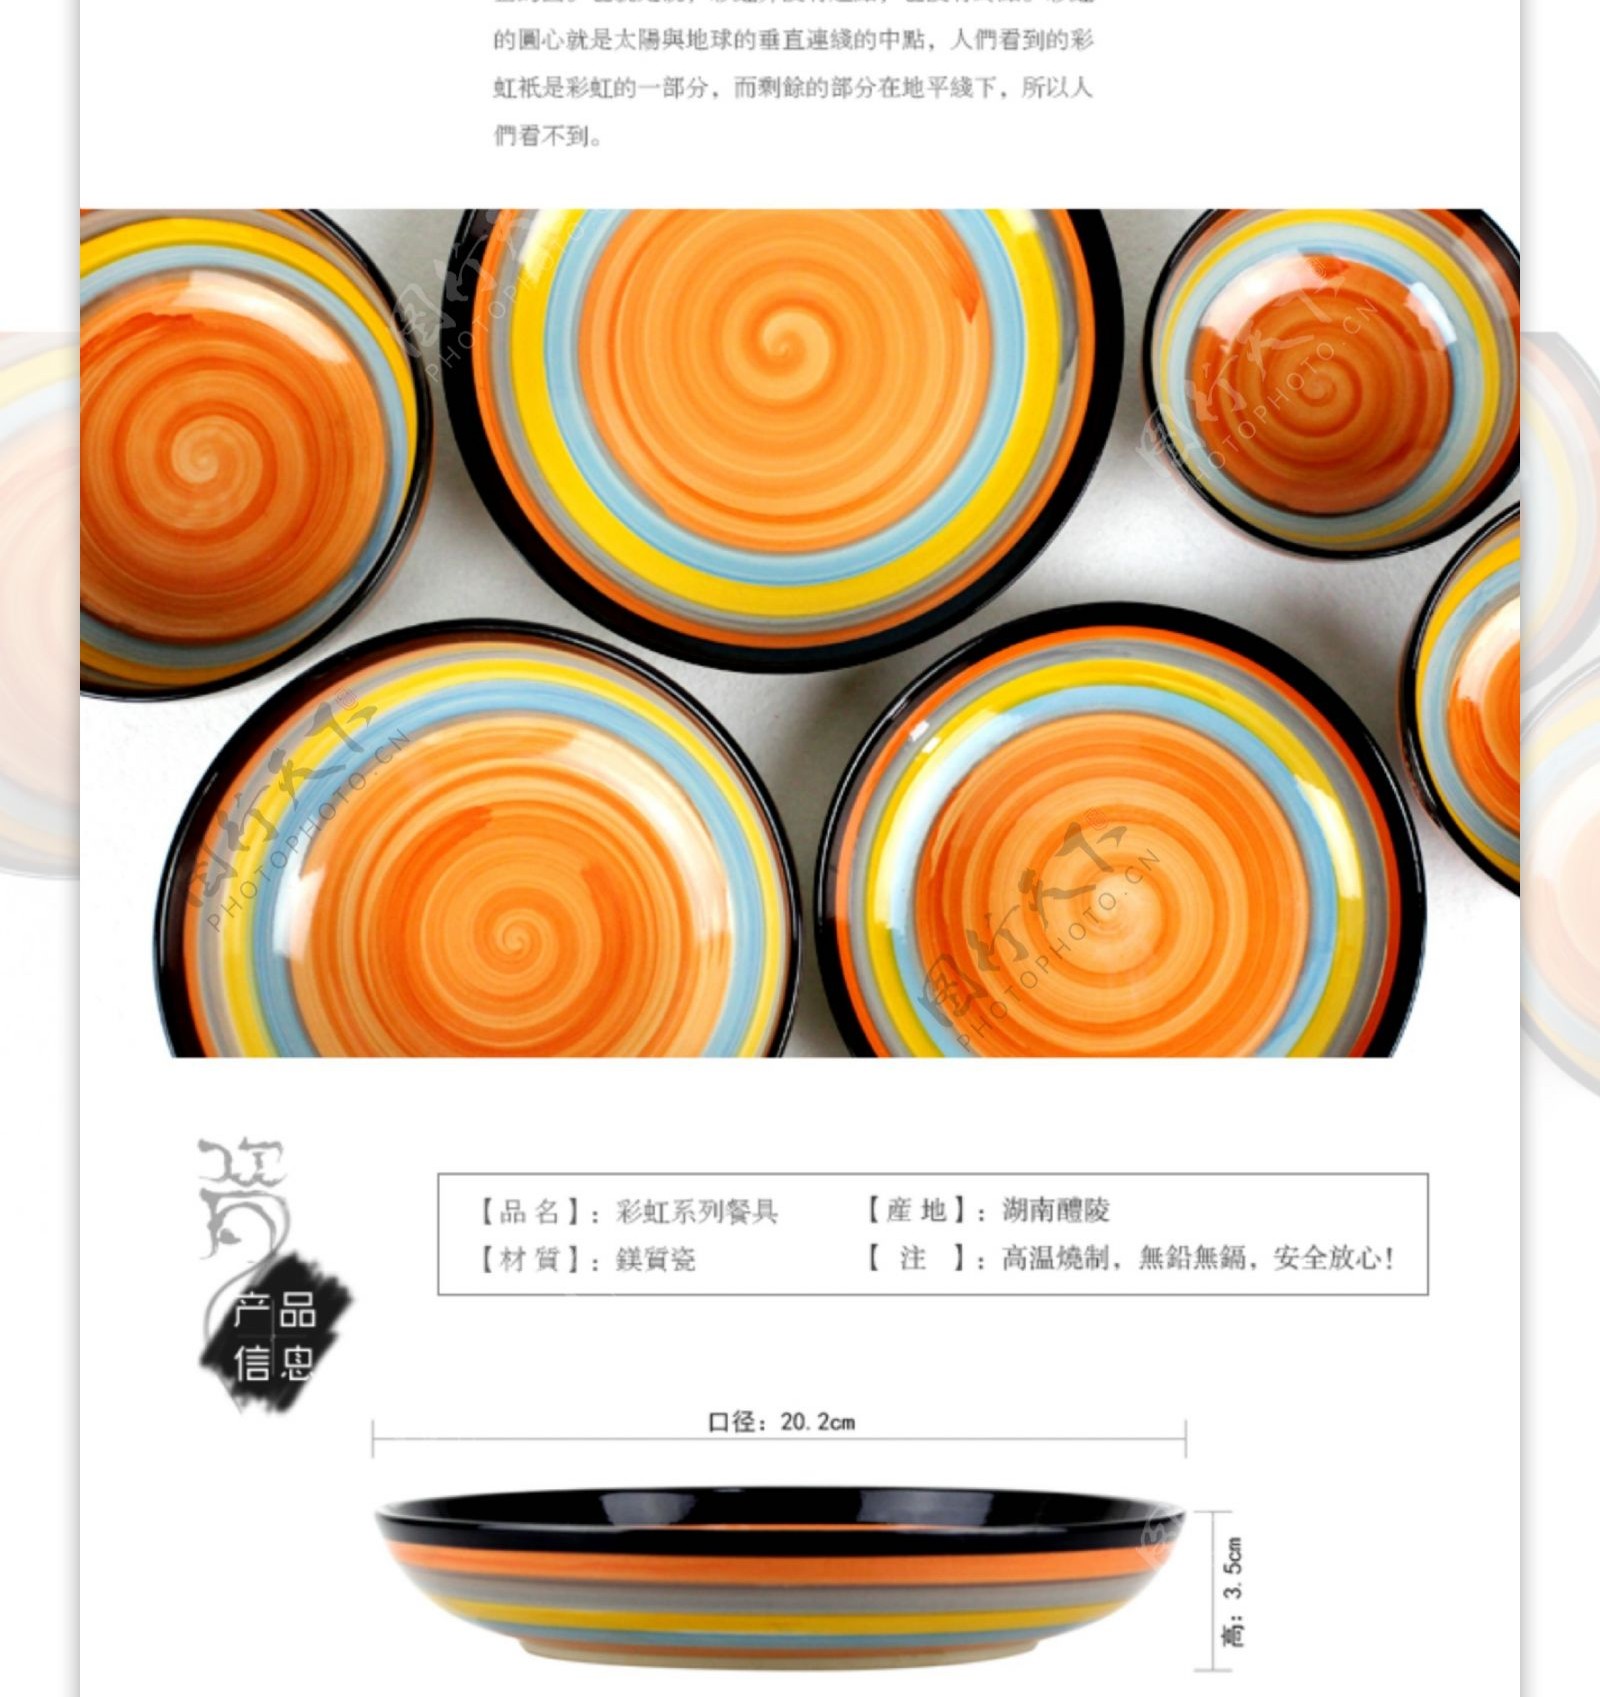 陶瓷碗淘宝宝贝描述详情页图片